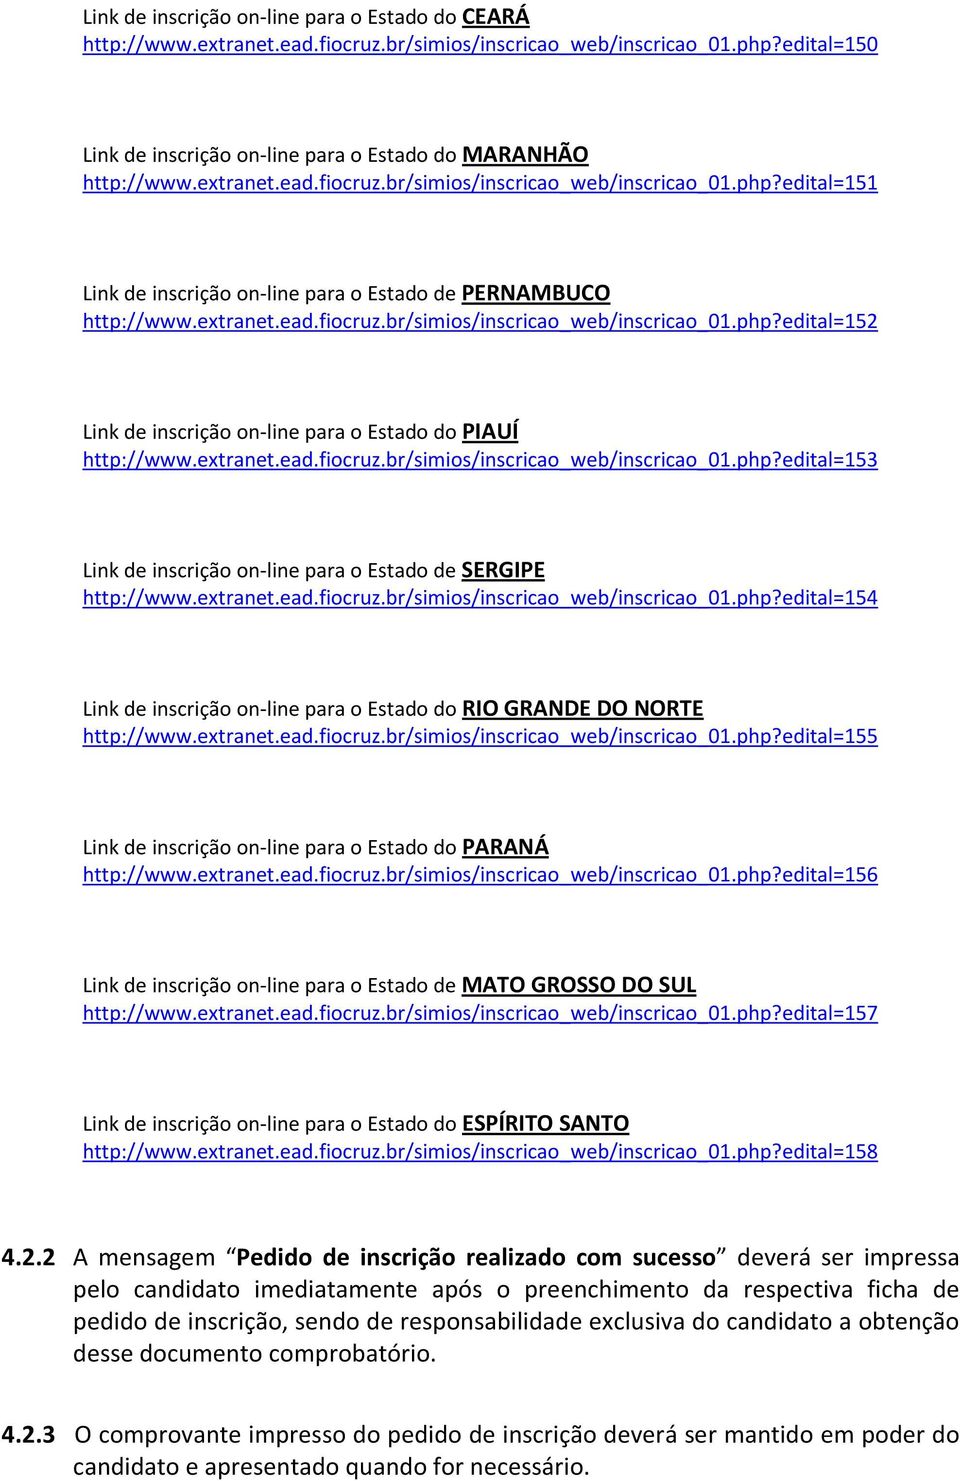 extranet.ead.fiocruz.br/simios/inscricao_web/inscricao_01.php?edital=153 Link de inscrição on-line para o Estado de SERGIPE http://www.extranet.ead.fiocruz.br/simios/inscricao_web/inscricao_01.php?edital=154 Link de inscrição on-line para o Estado do RIO GRANDE DO NORTE http://www.